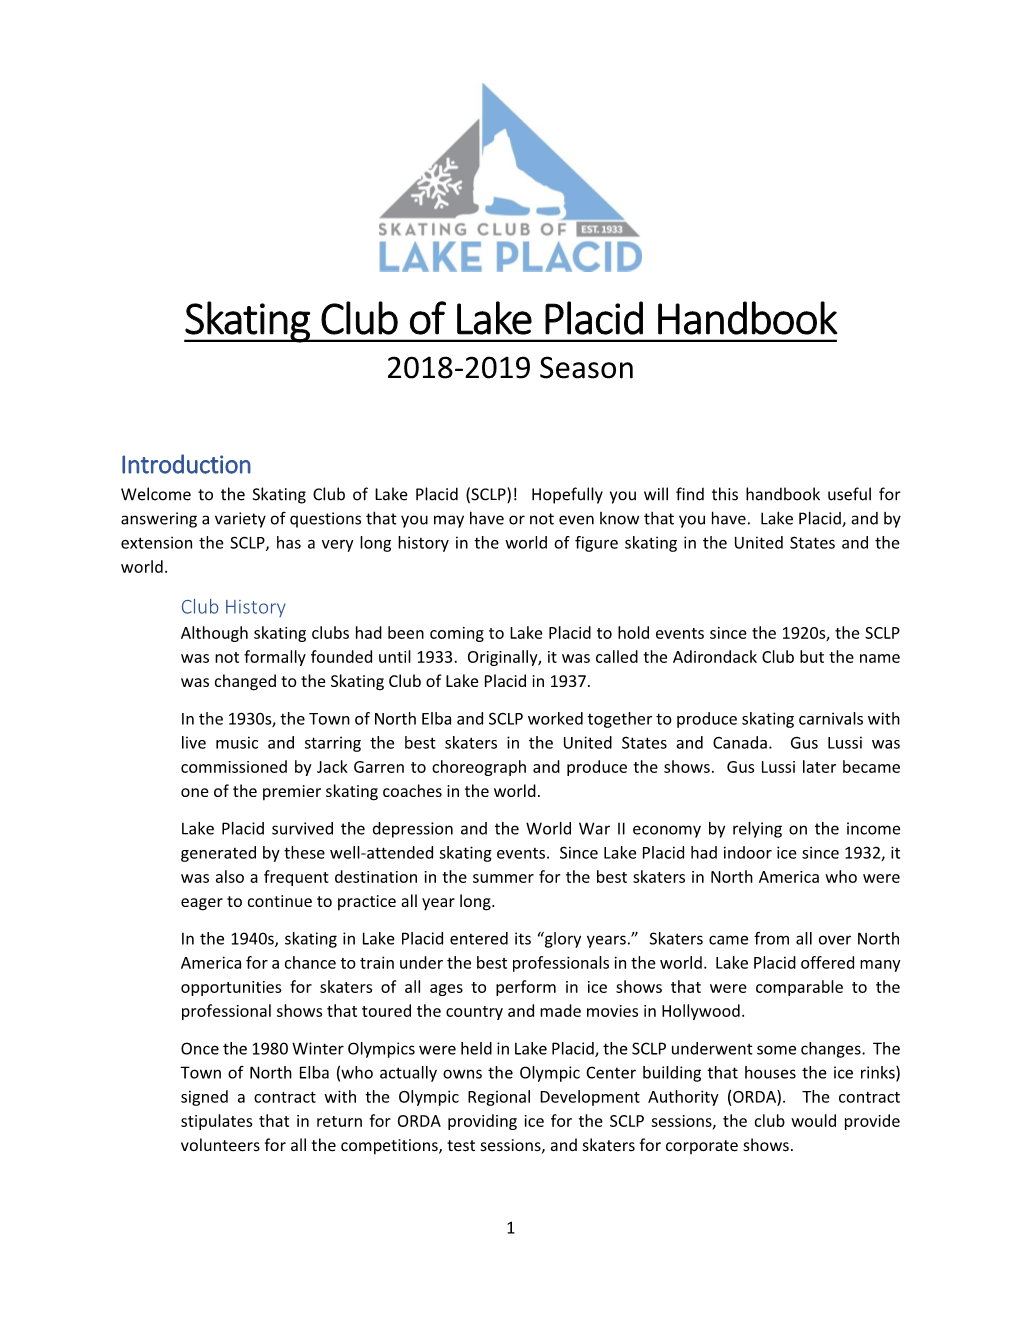 Skating Club of Lake Placid Handbook 2018-2019 Season